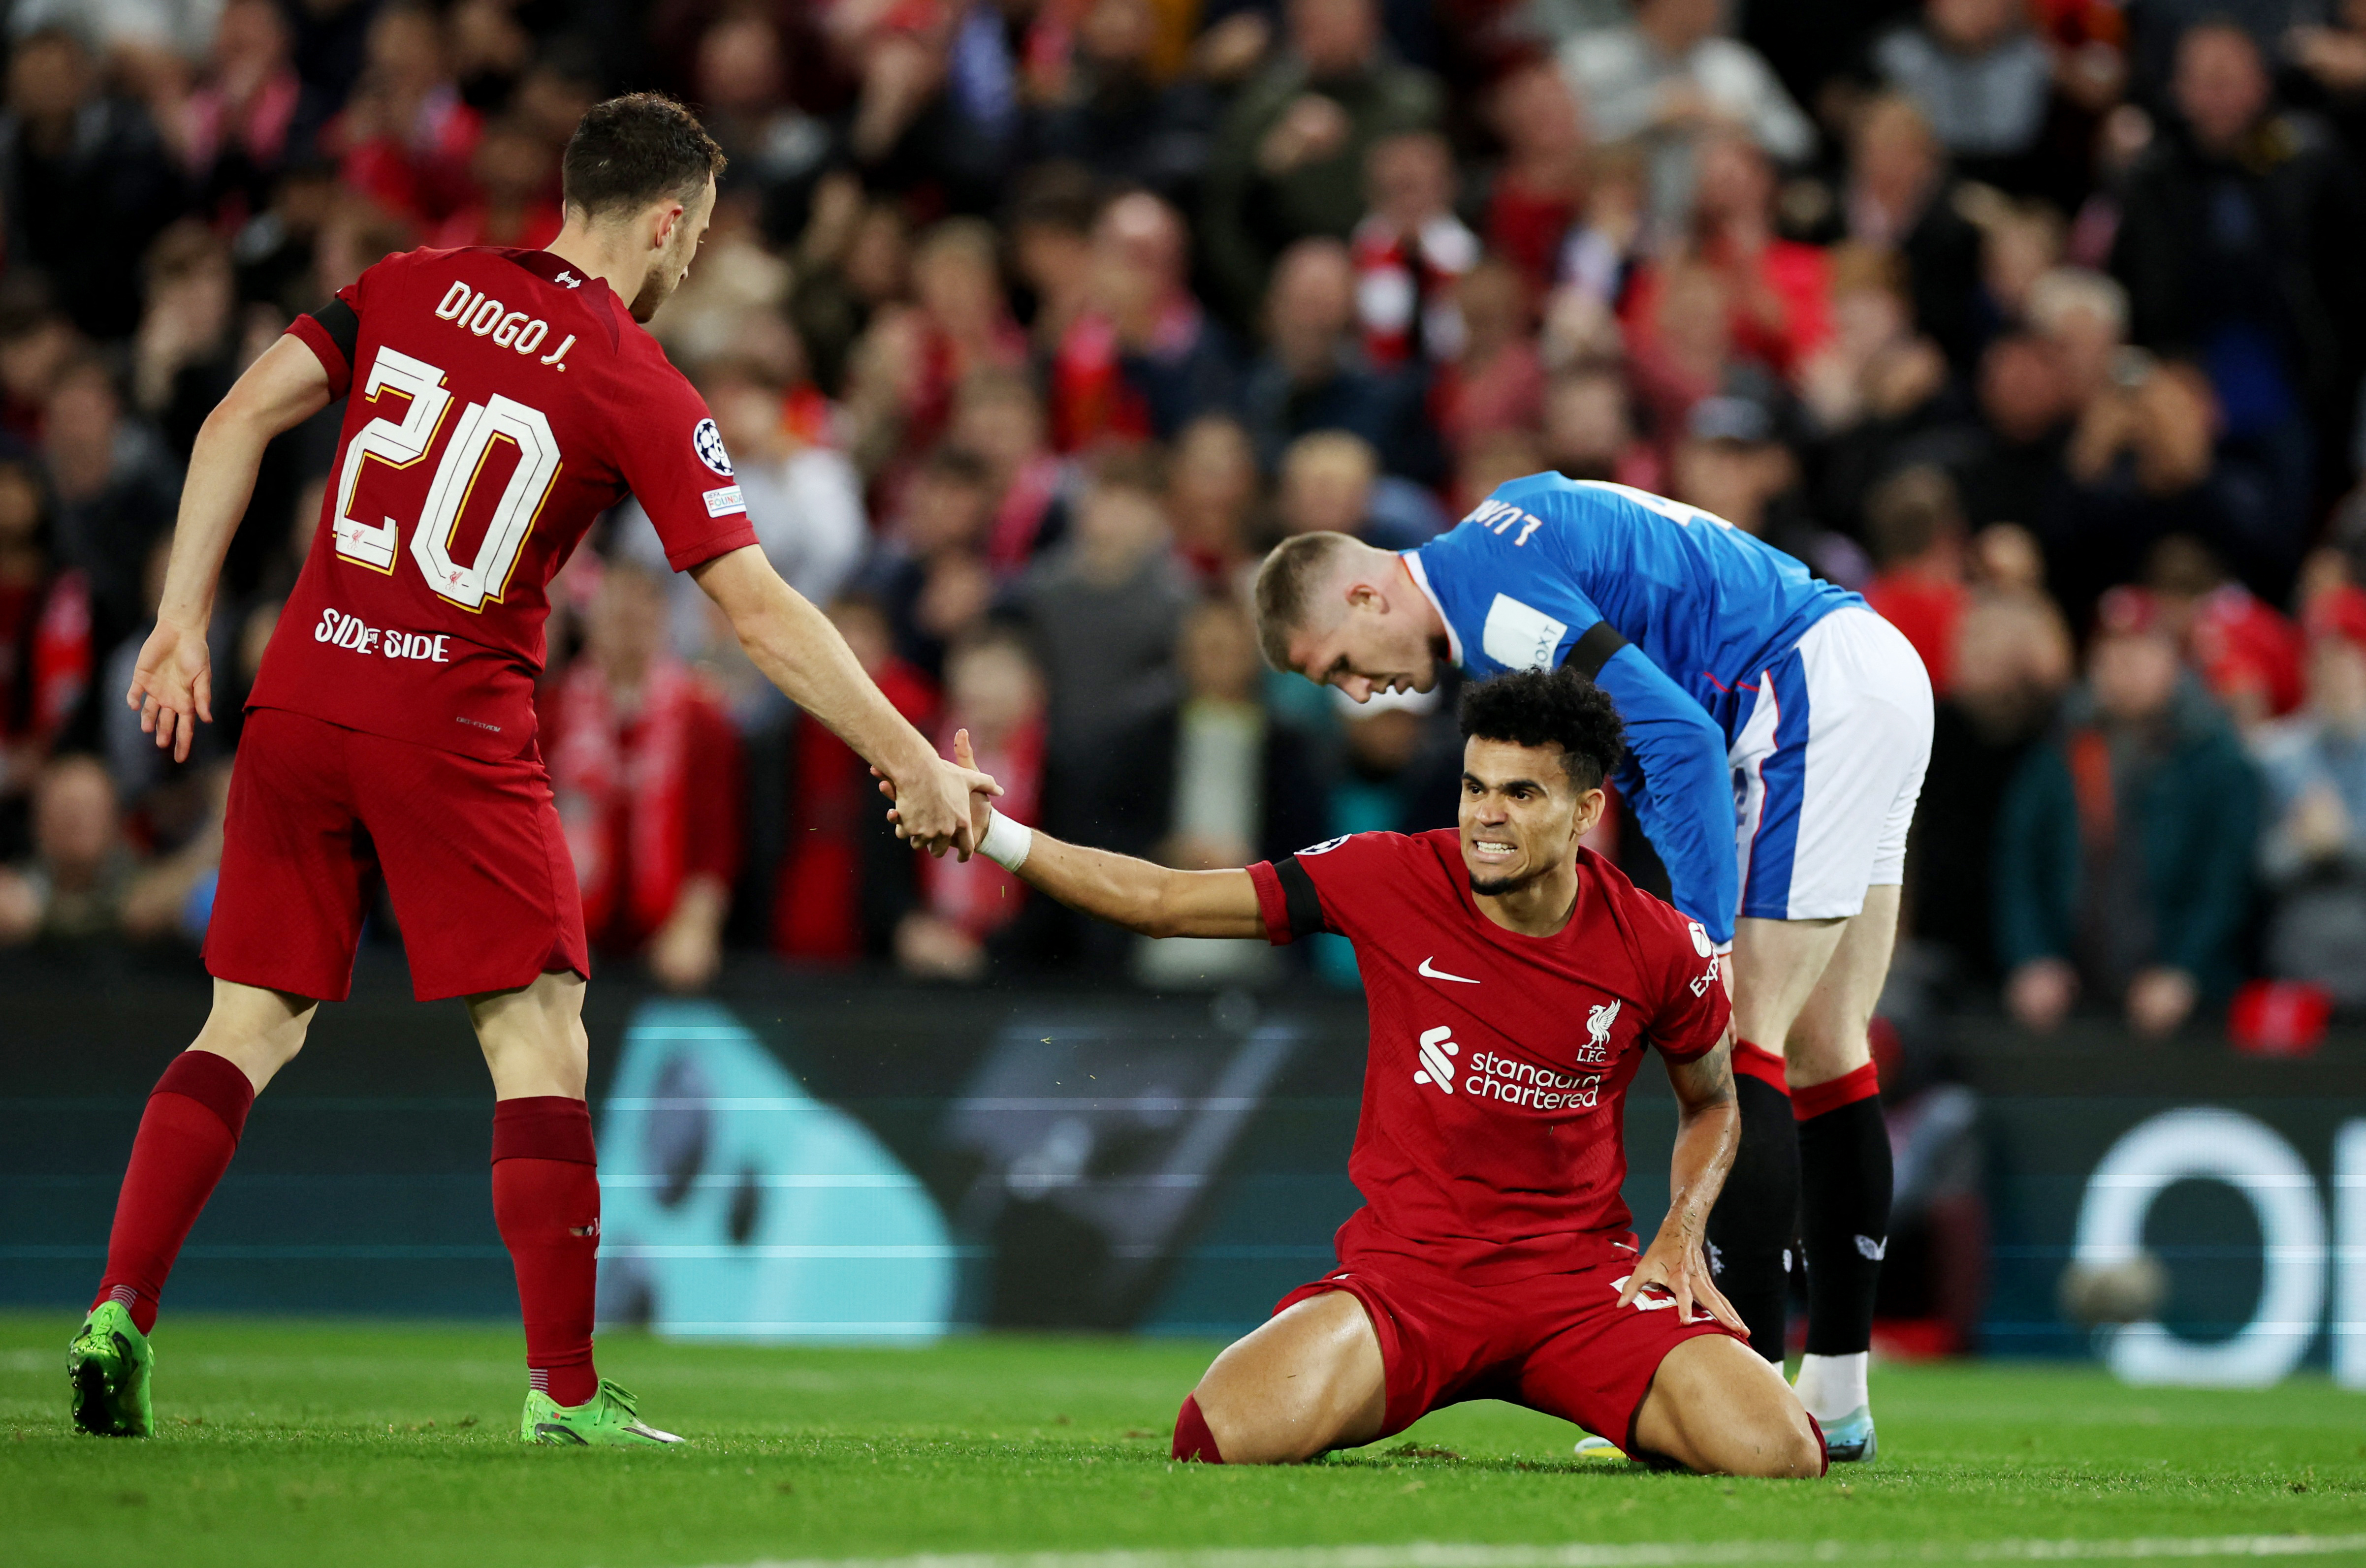 Al jugador colombiano le cometieron una pena máxima que terminó en el segundo tanto del Liverpool sobre el Rangers. REUTERS/Phil Noble